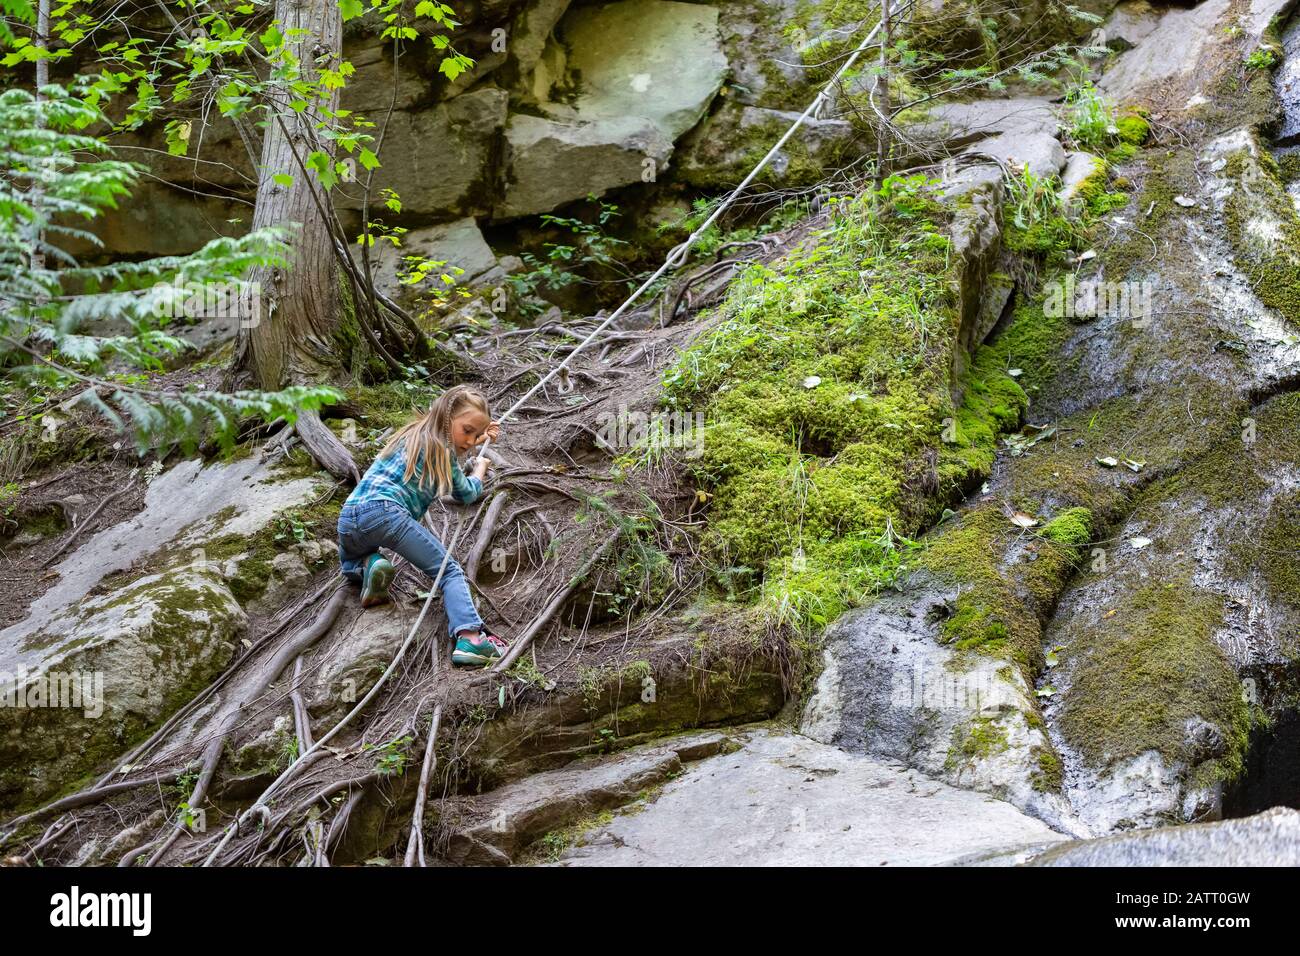 Ein Mädchen hält ein Seil, während es einen steilen Felshang hinaufklettert und auf den Boden hinter sich schaut; Lachsarm, British Columbia, Kanada Stockfoto